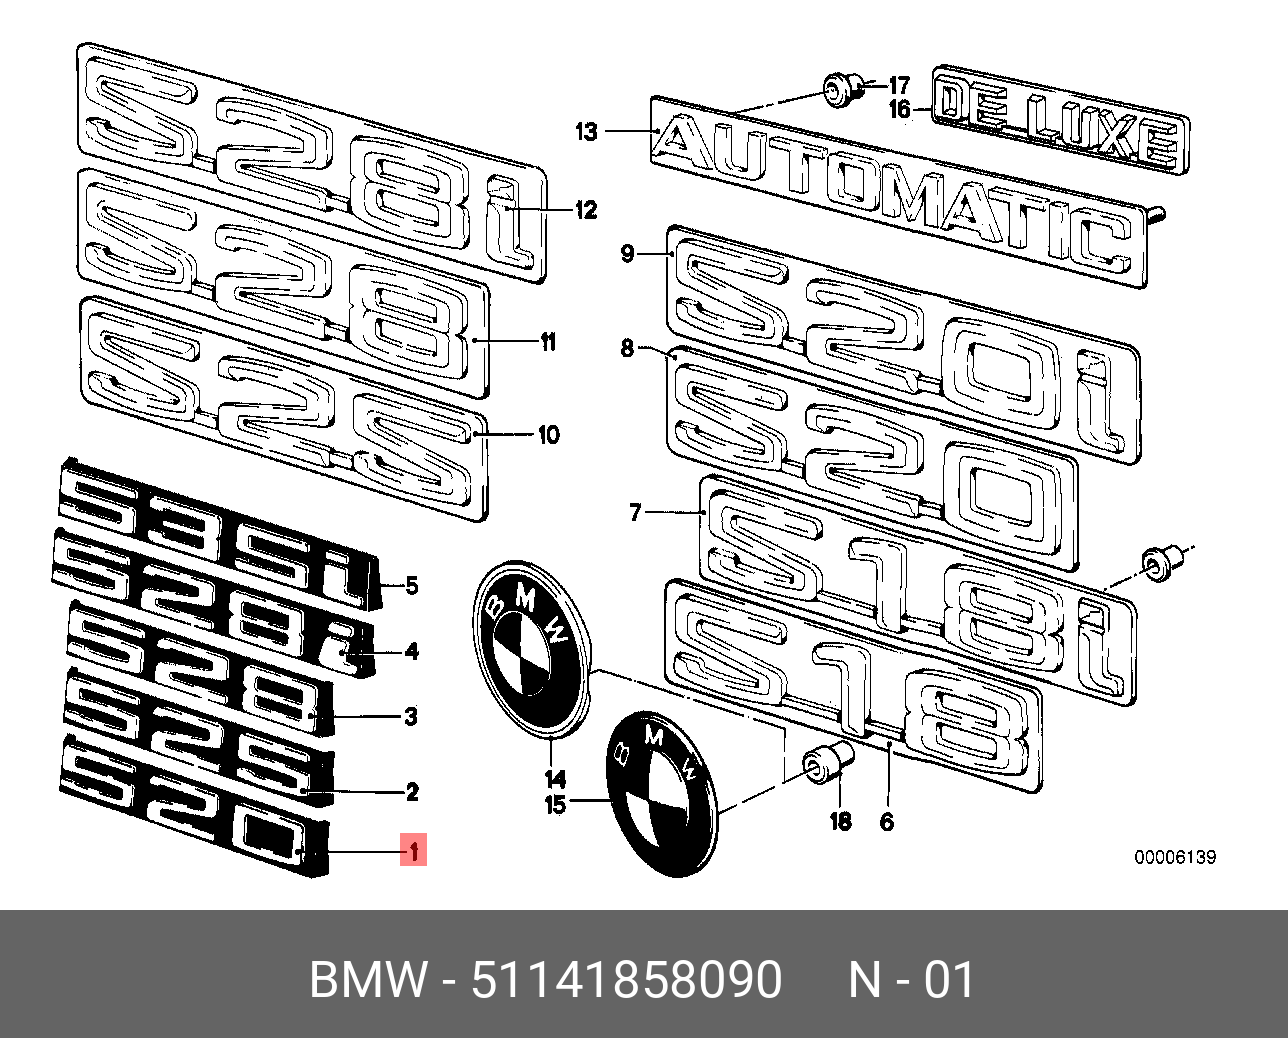 Genuine BMW E12 Sedan FRONT Grille 520 Emblem Badge Logo Sign OEM 51141858090